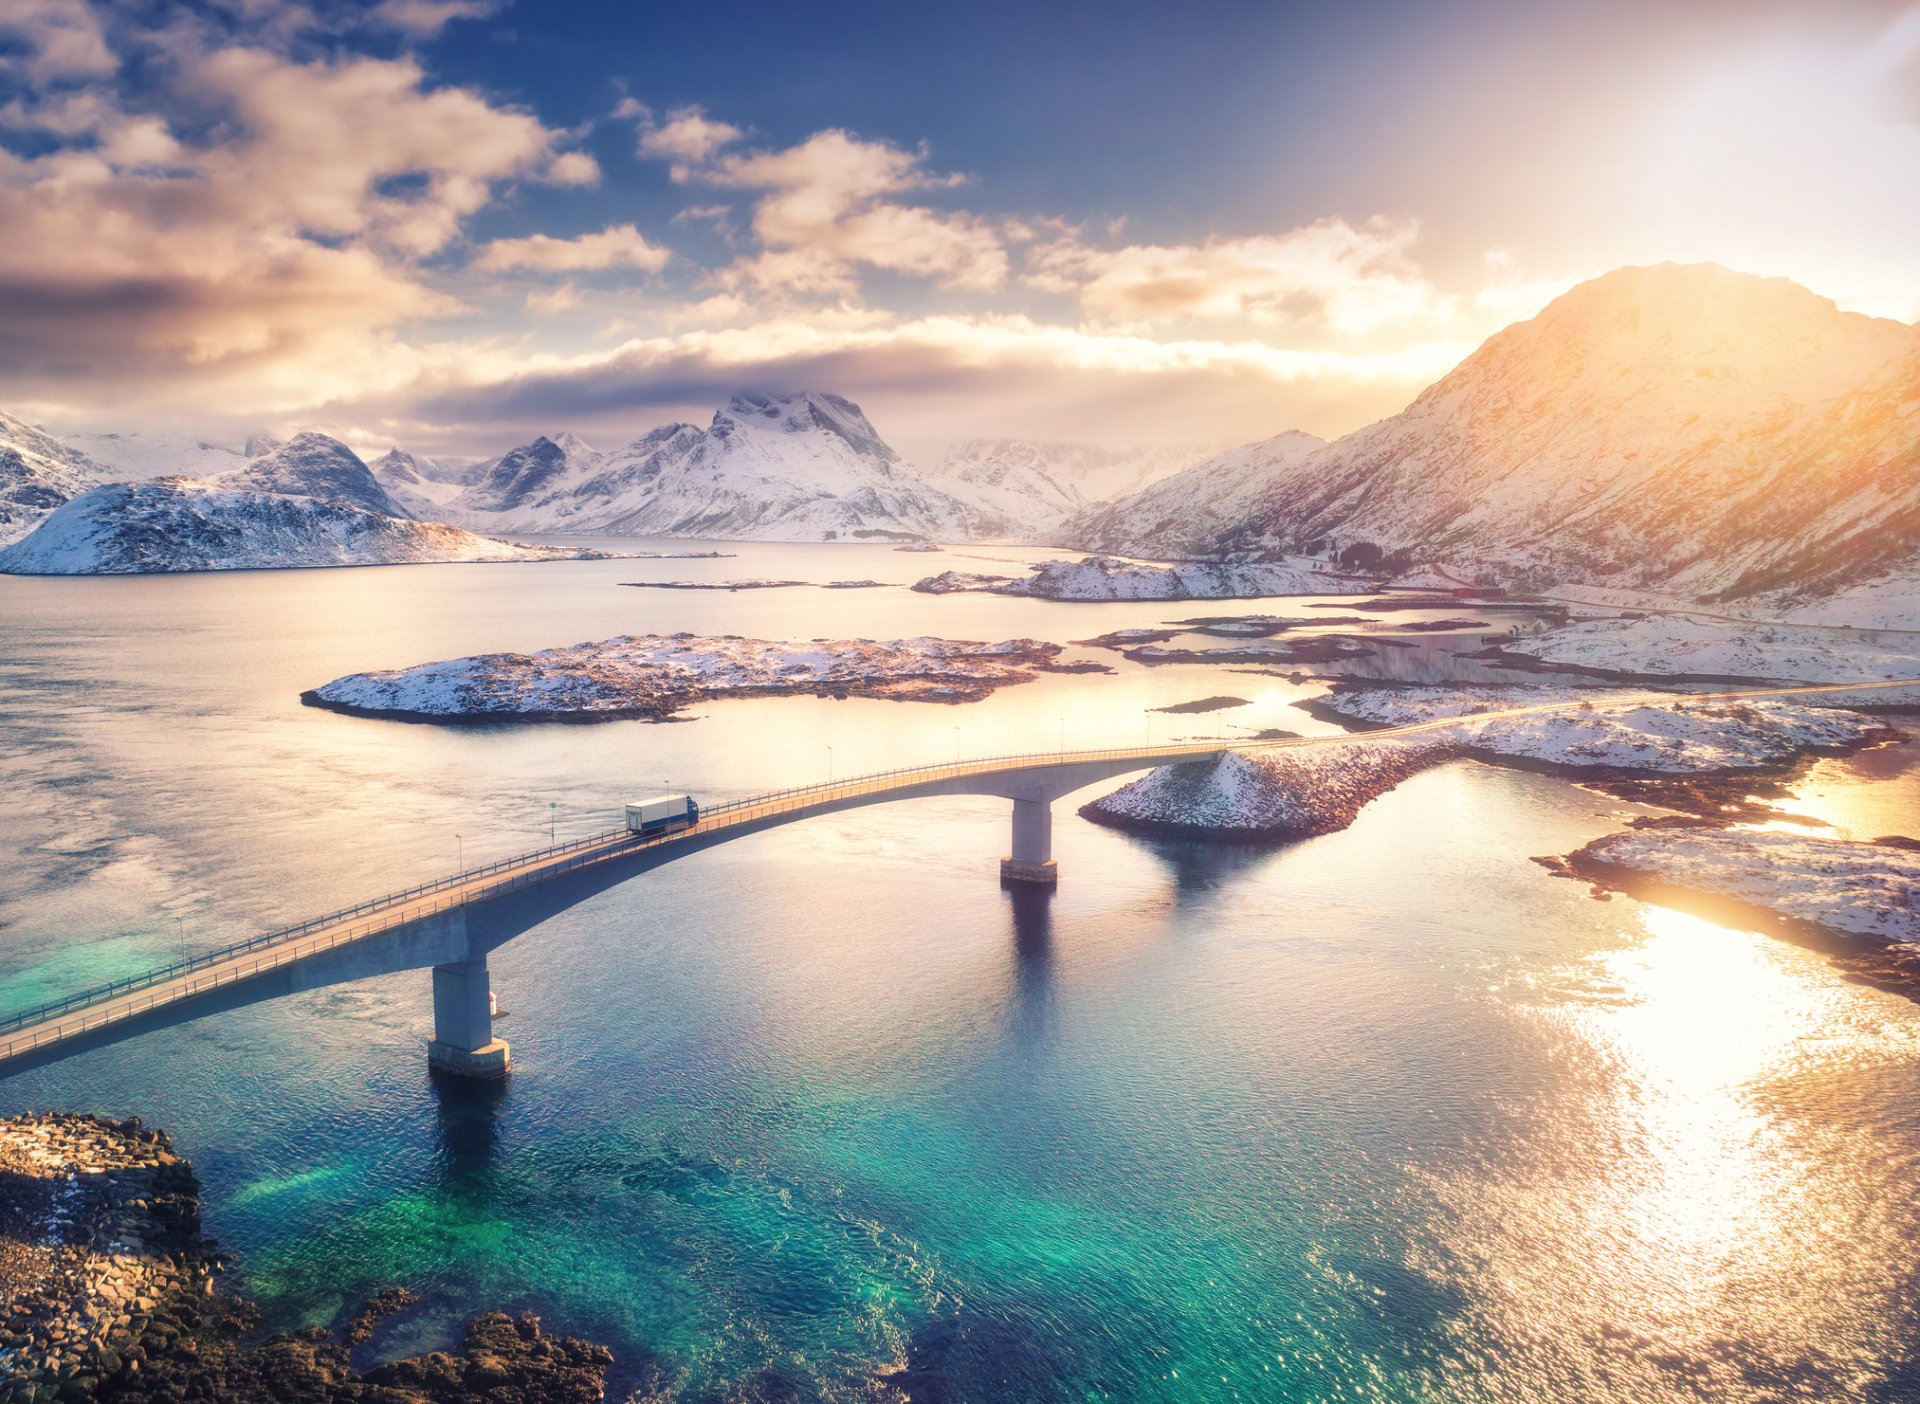 Море, мост, планини - зимен пейзаж на остров Лофотен, Норвегия